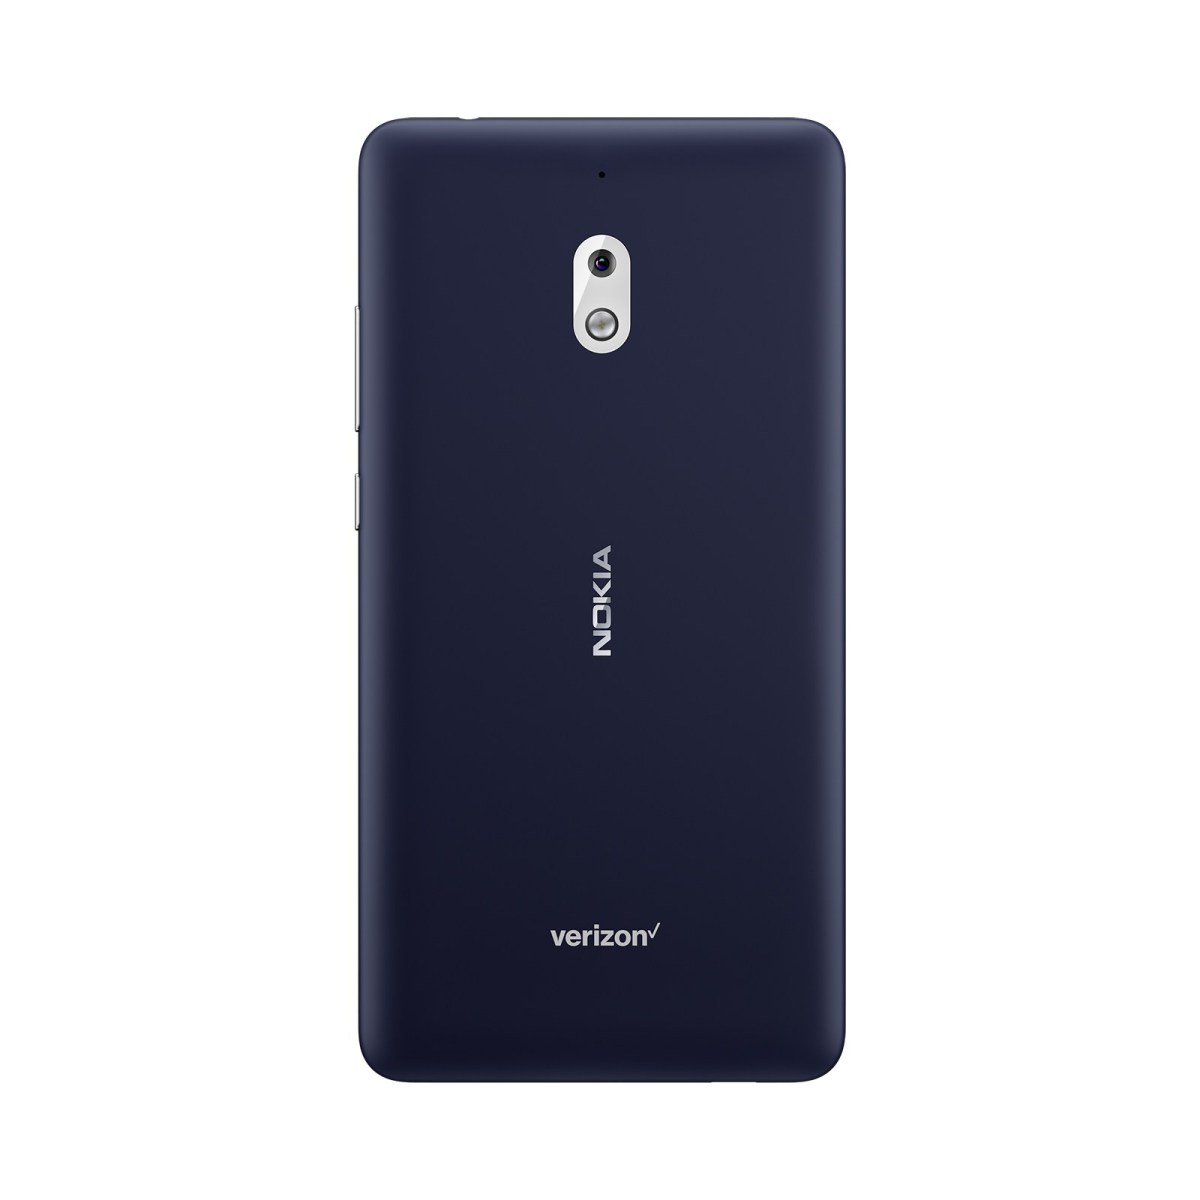 Nokia 2 V menerima pembaruan perangkat lunak baru